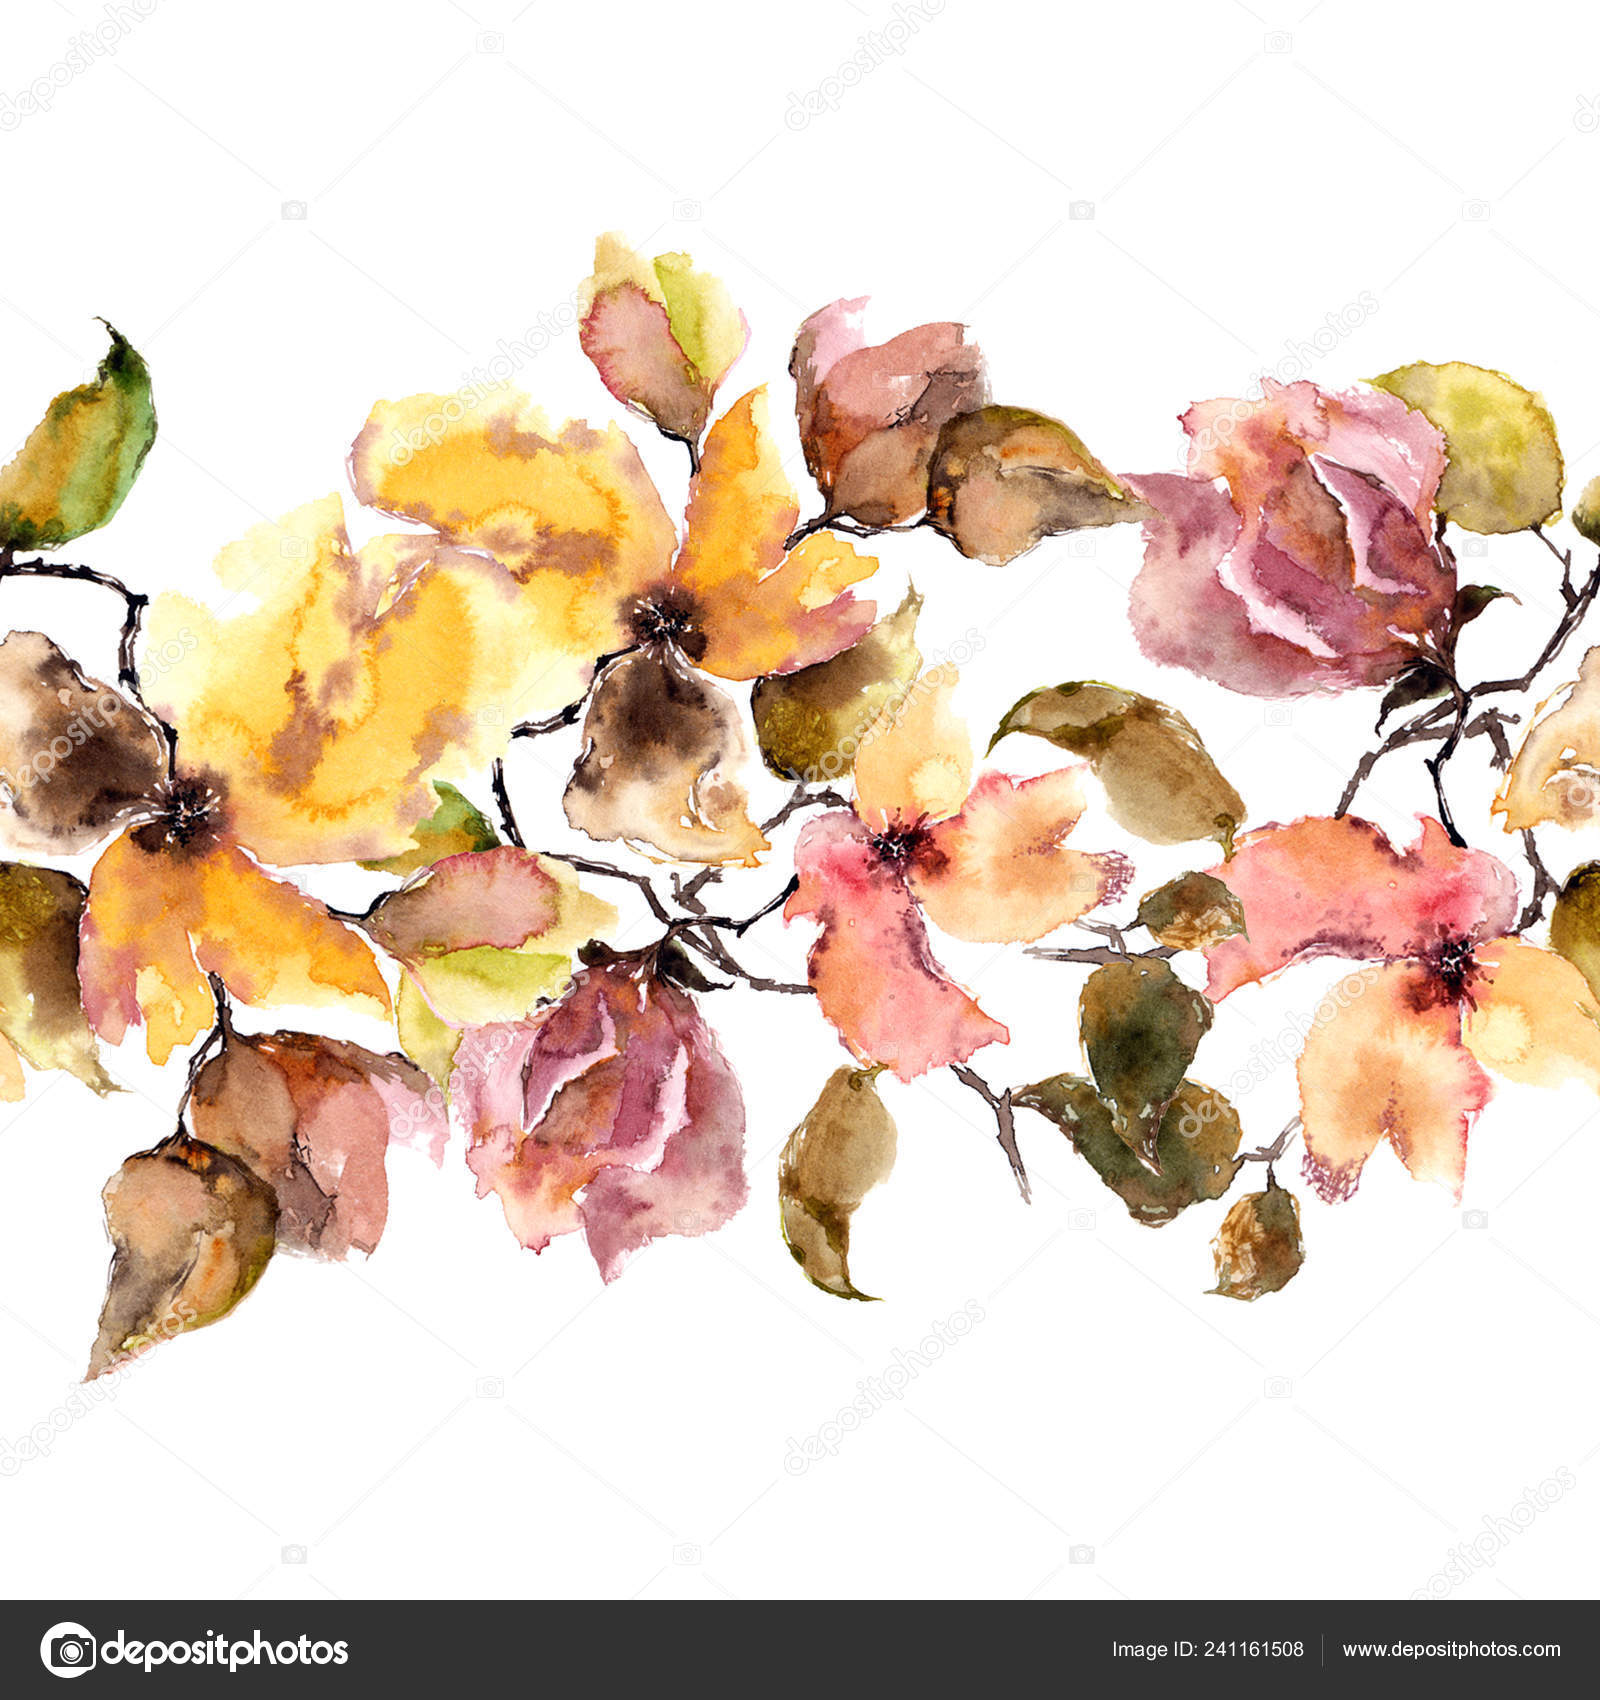 11,779 ilustraciones de stock de Flores de otoño | Depositphotos®